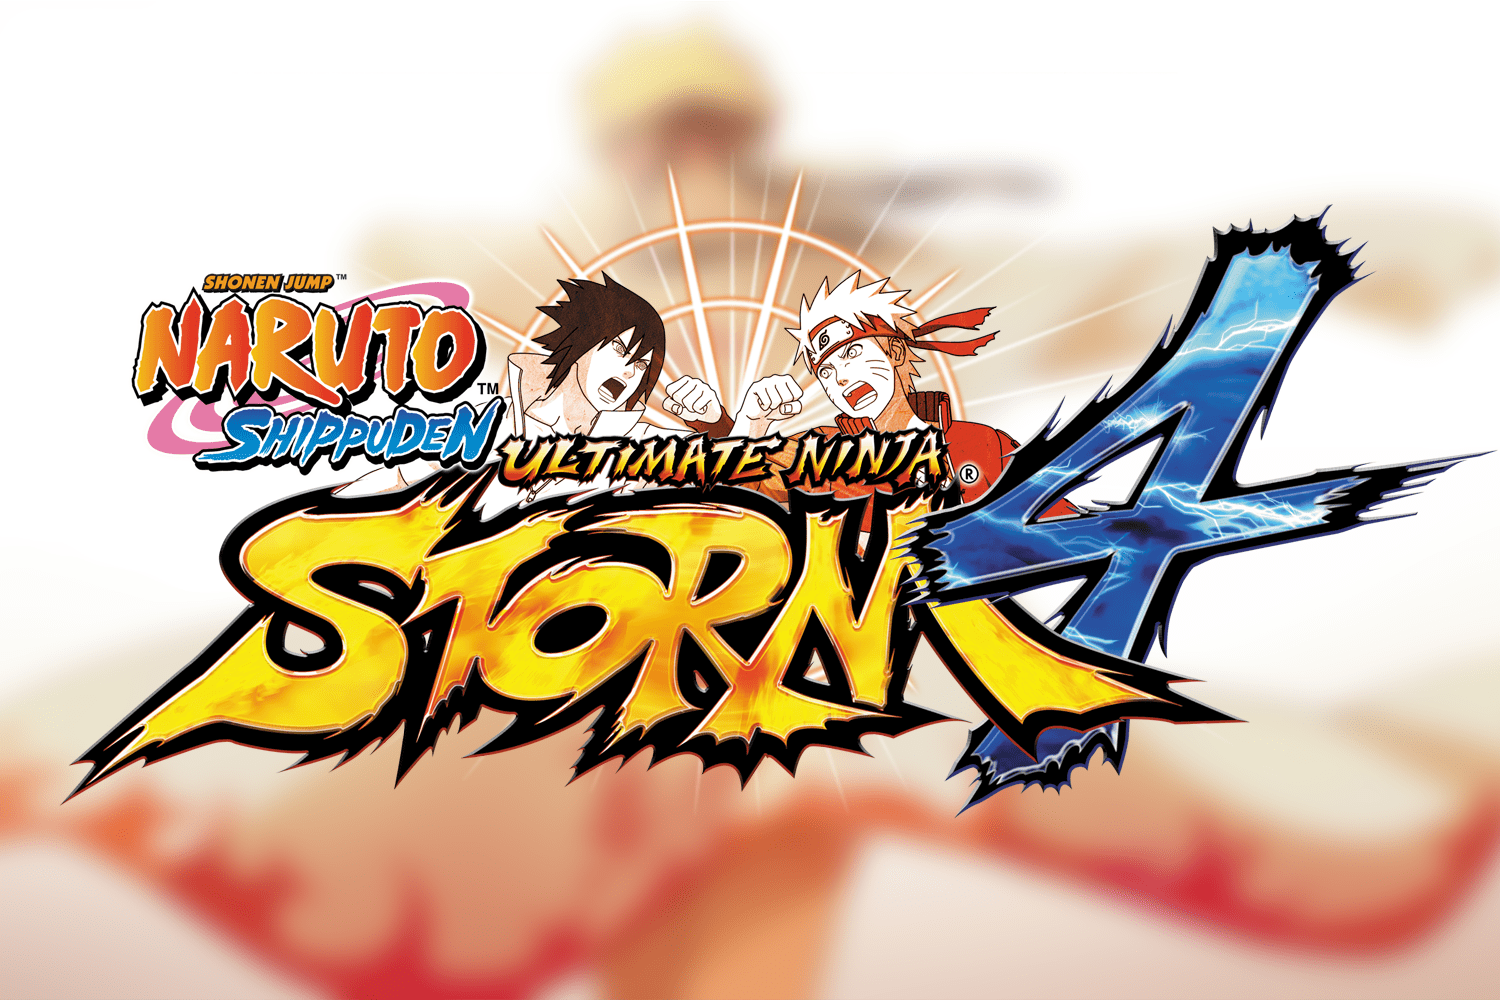 Modo Aventura de Naruto Storm 4